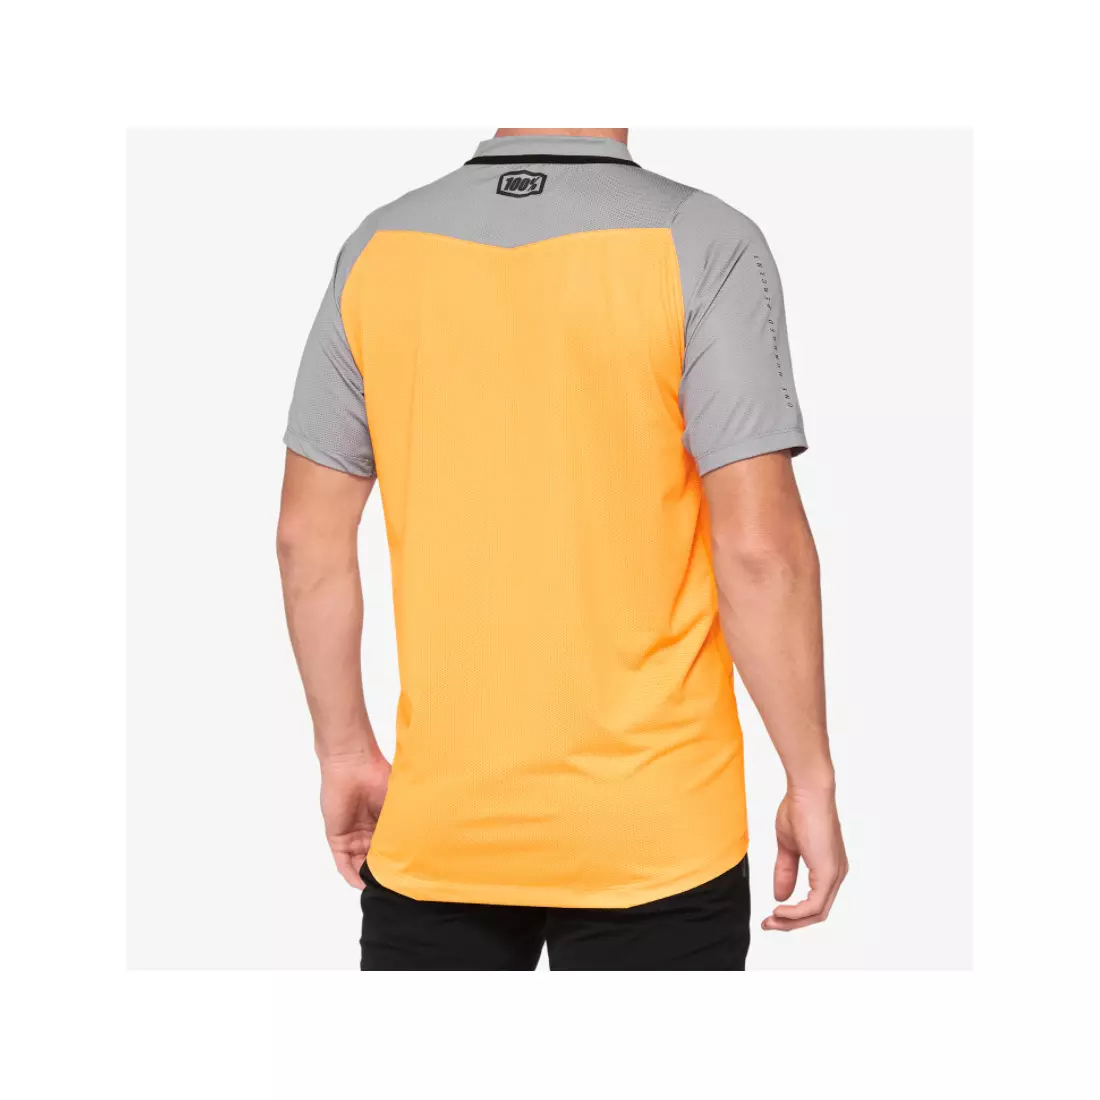 100% CELIUM pánský cyklistický dres, orange grey 